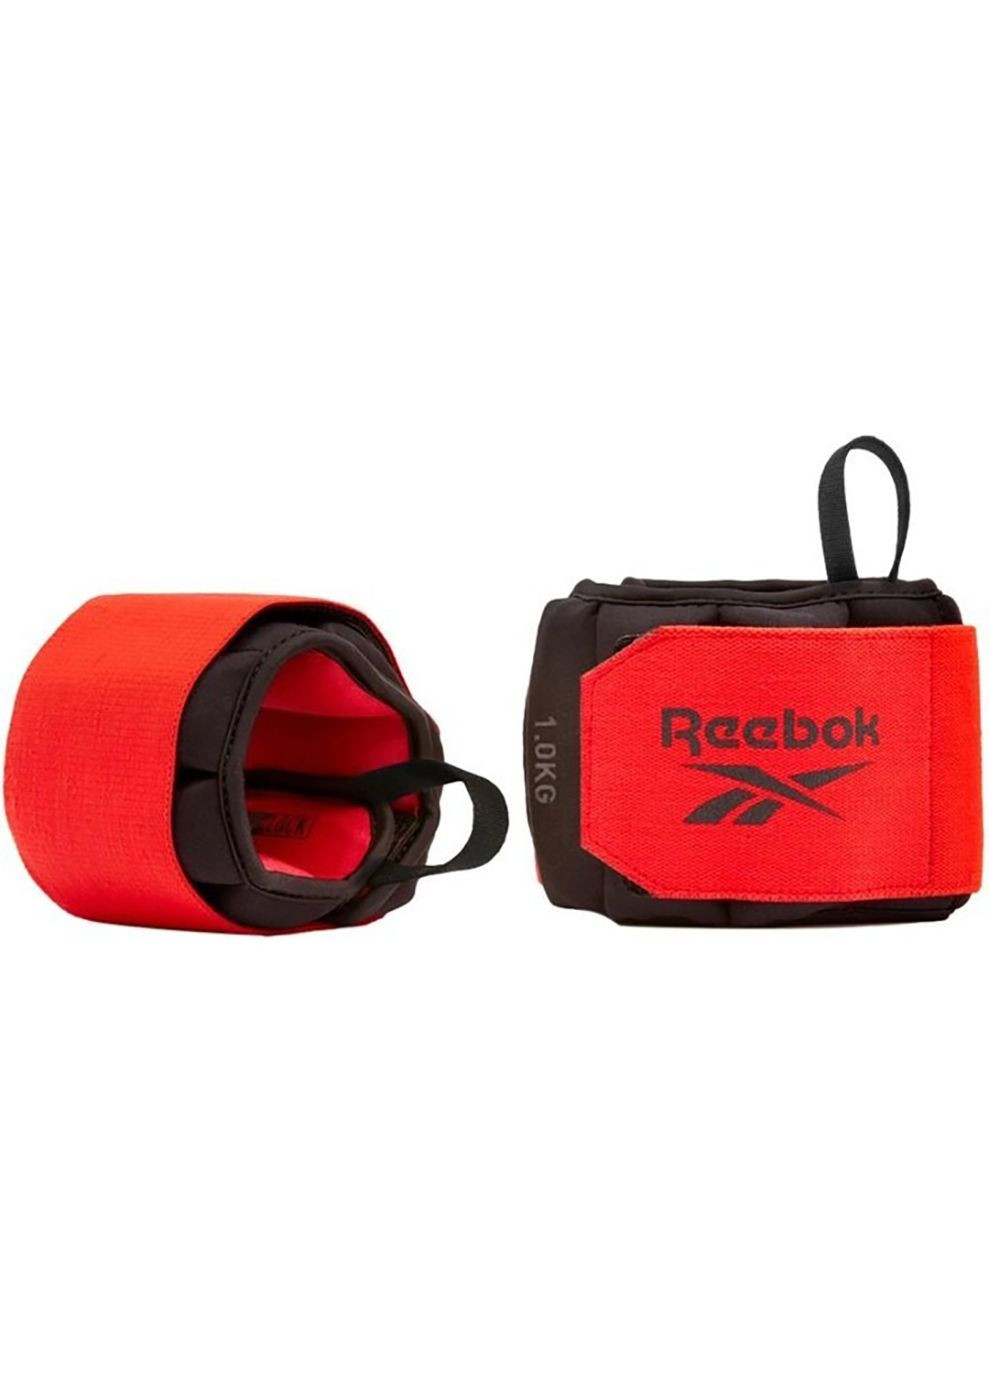 Утяжелители запястья Flexlock Wrist Weights черный, красный Уни 1 кг Reebok (268832100)